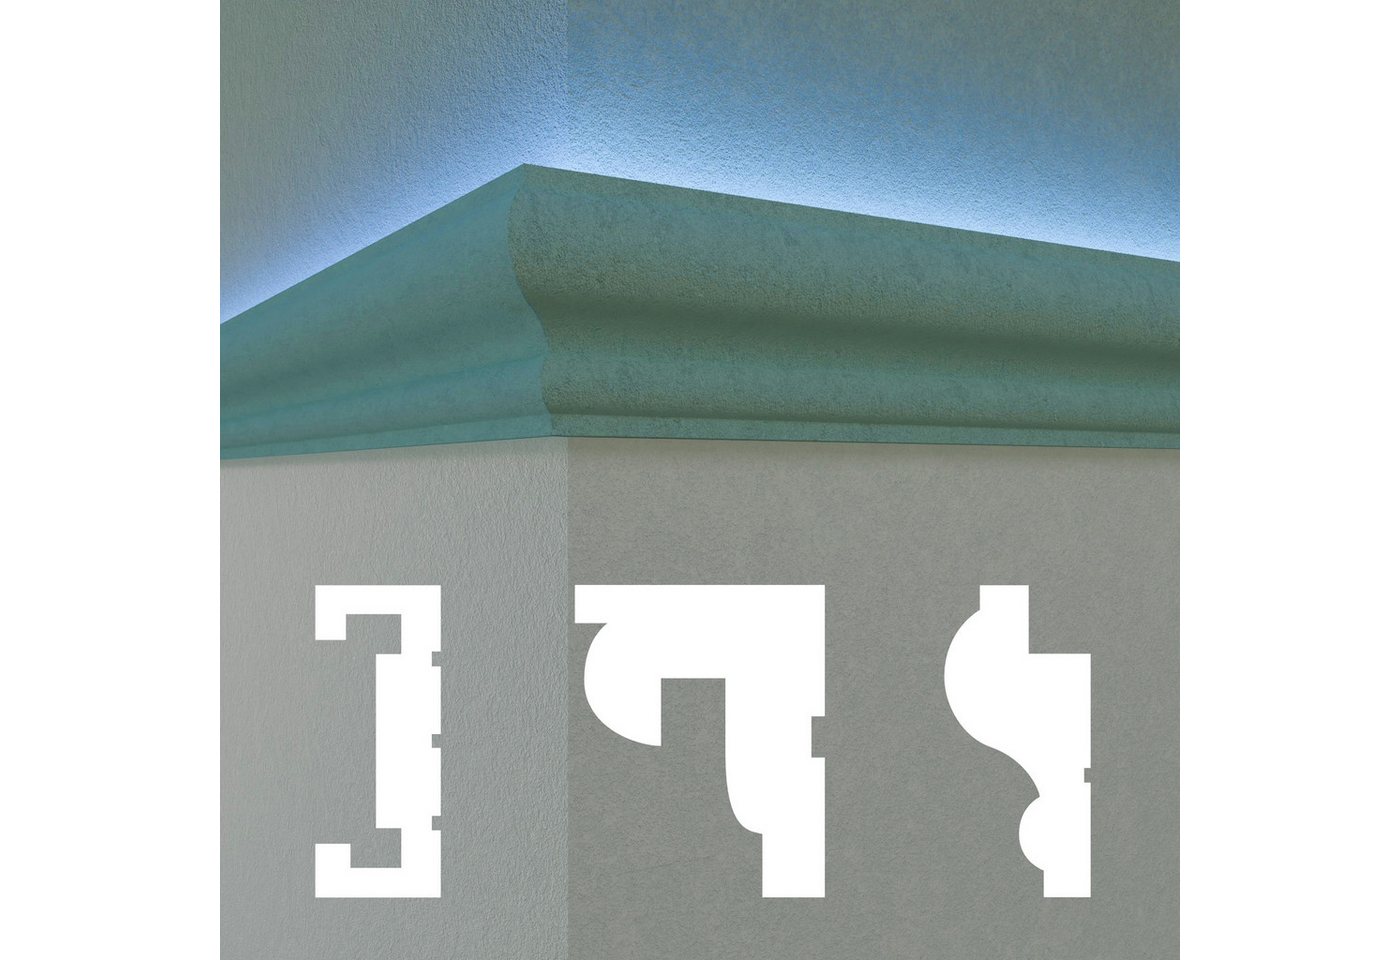 Hexim Stuckleiste DLED-07, 2 Meter / 1 Profil, LED Fassadenprofil aus EPS - Indirekte Beleuchtung mit Fassaden Stuckleisten - (DLED-7, 80 x 170 mm, 2 Meter / 1 Profil) Stuckprofile Fassadenverkleidung außenbereich von Hexim